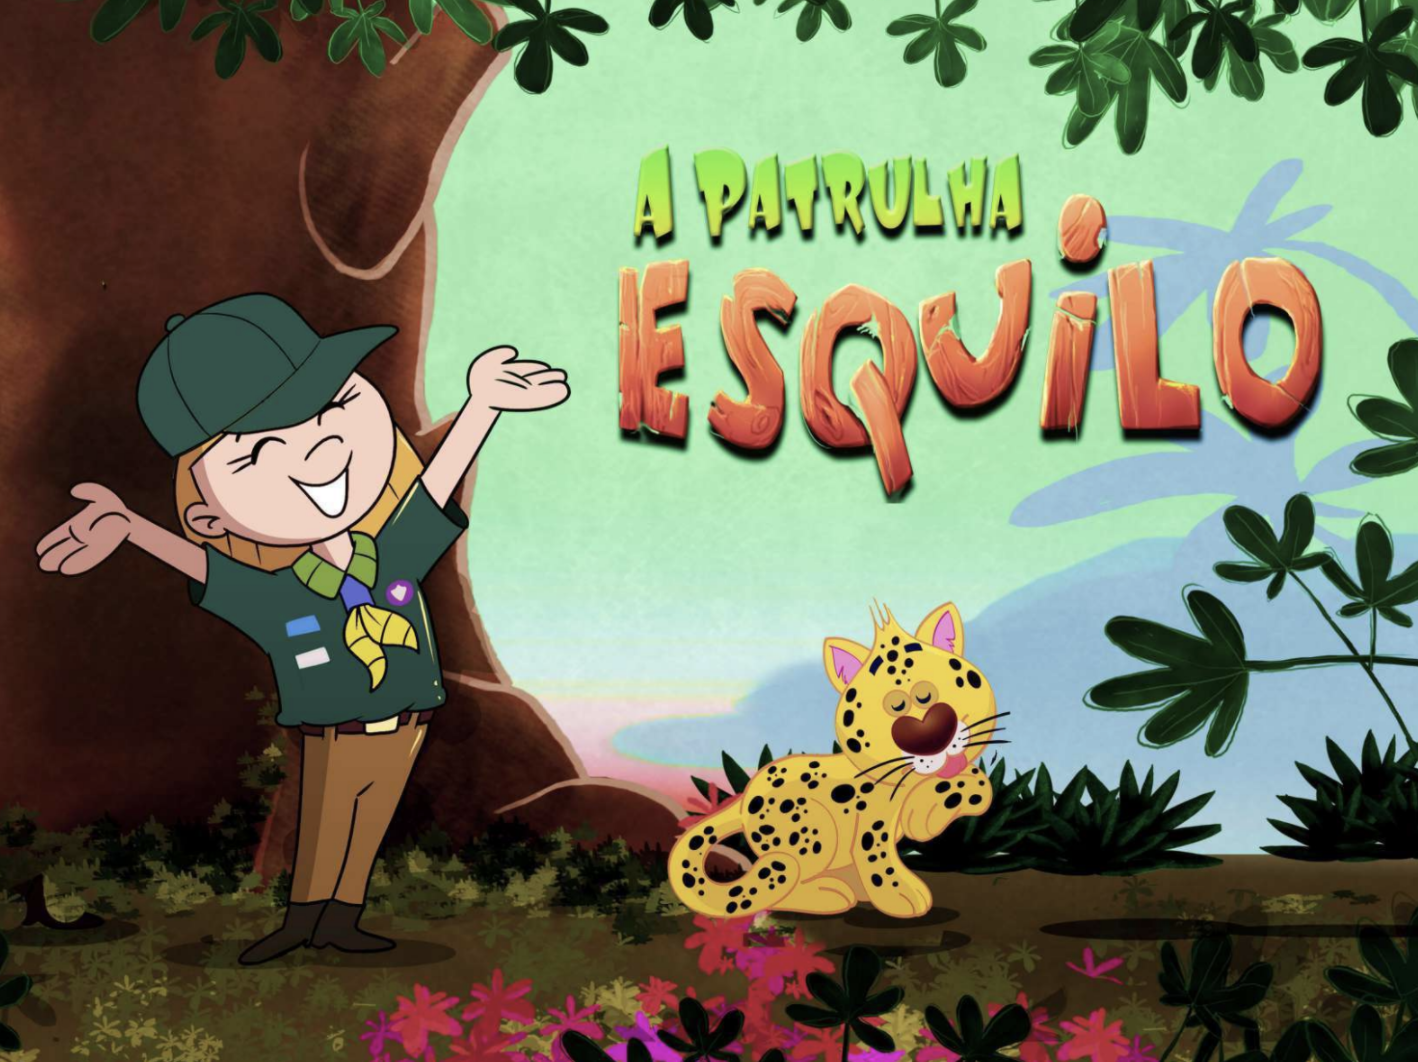 Patrulha Esquilo: destine parte de seu IPTU para série animada sobre Escotismo